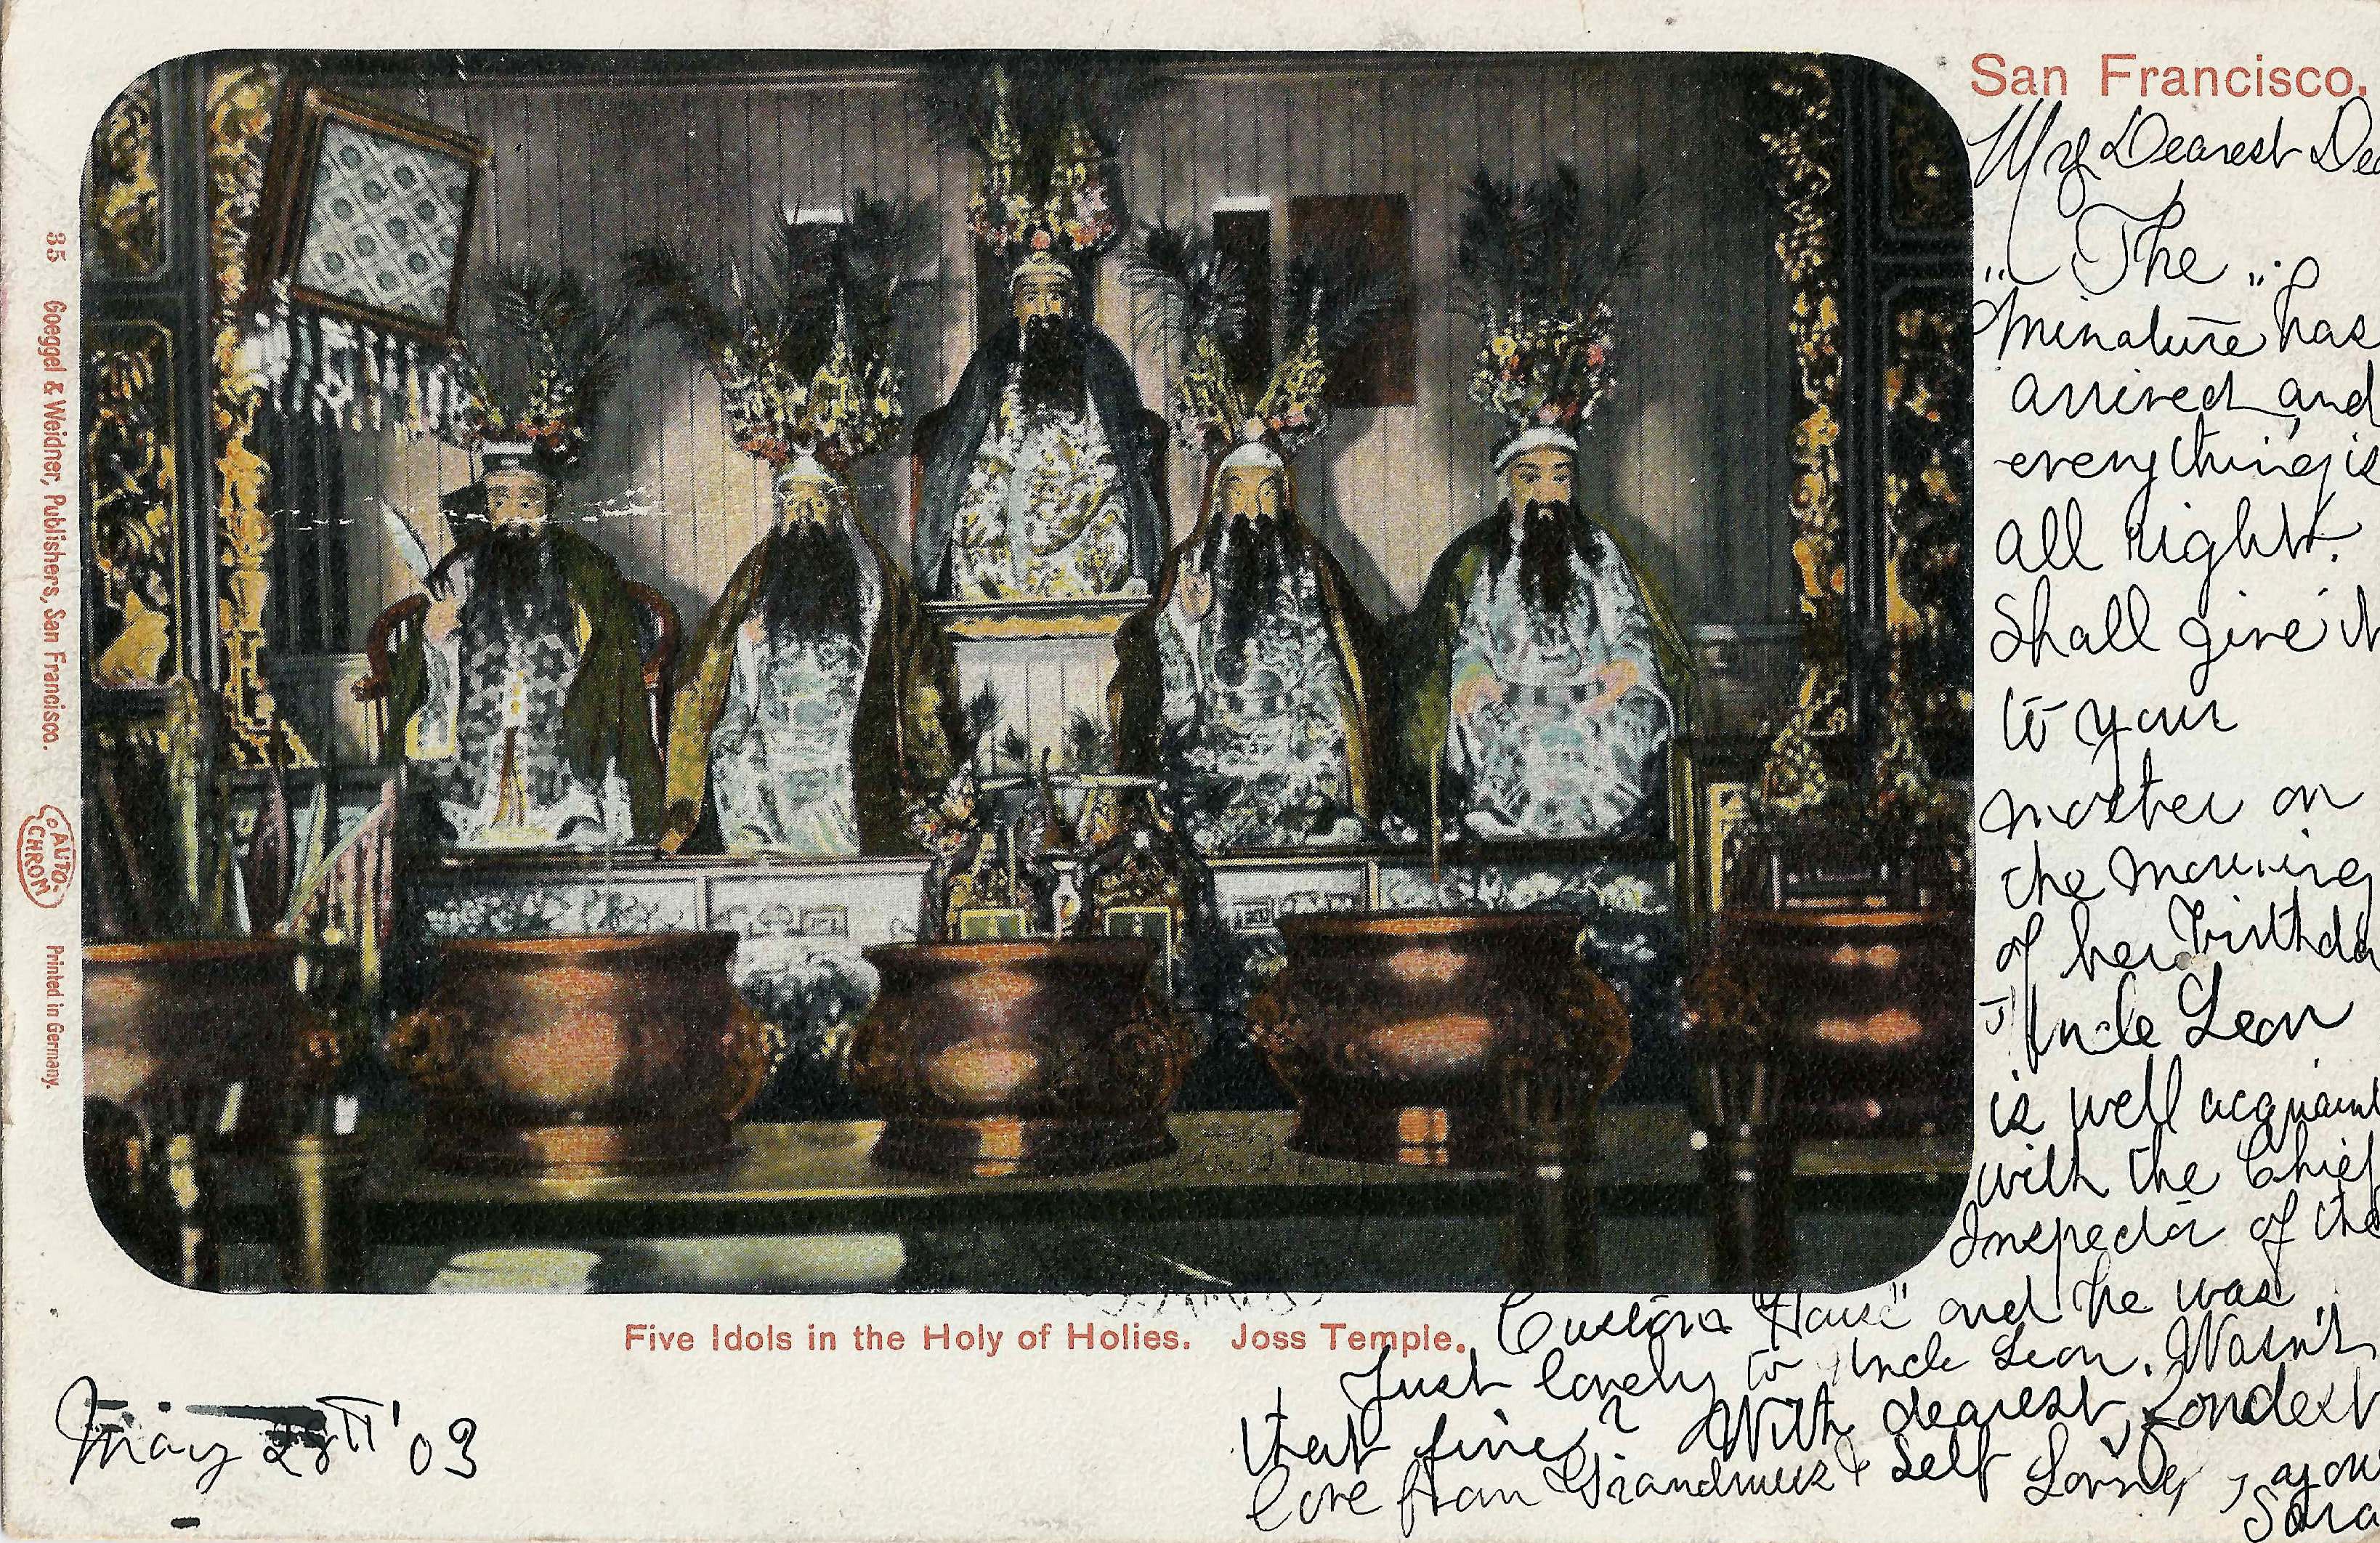 Postkarte mit Chinatown-Idolen in San Francisco